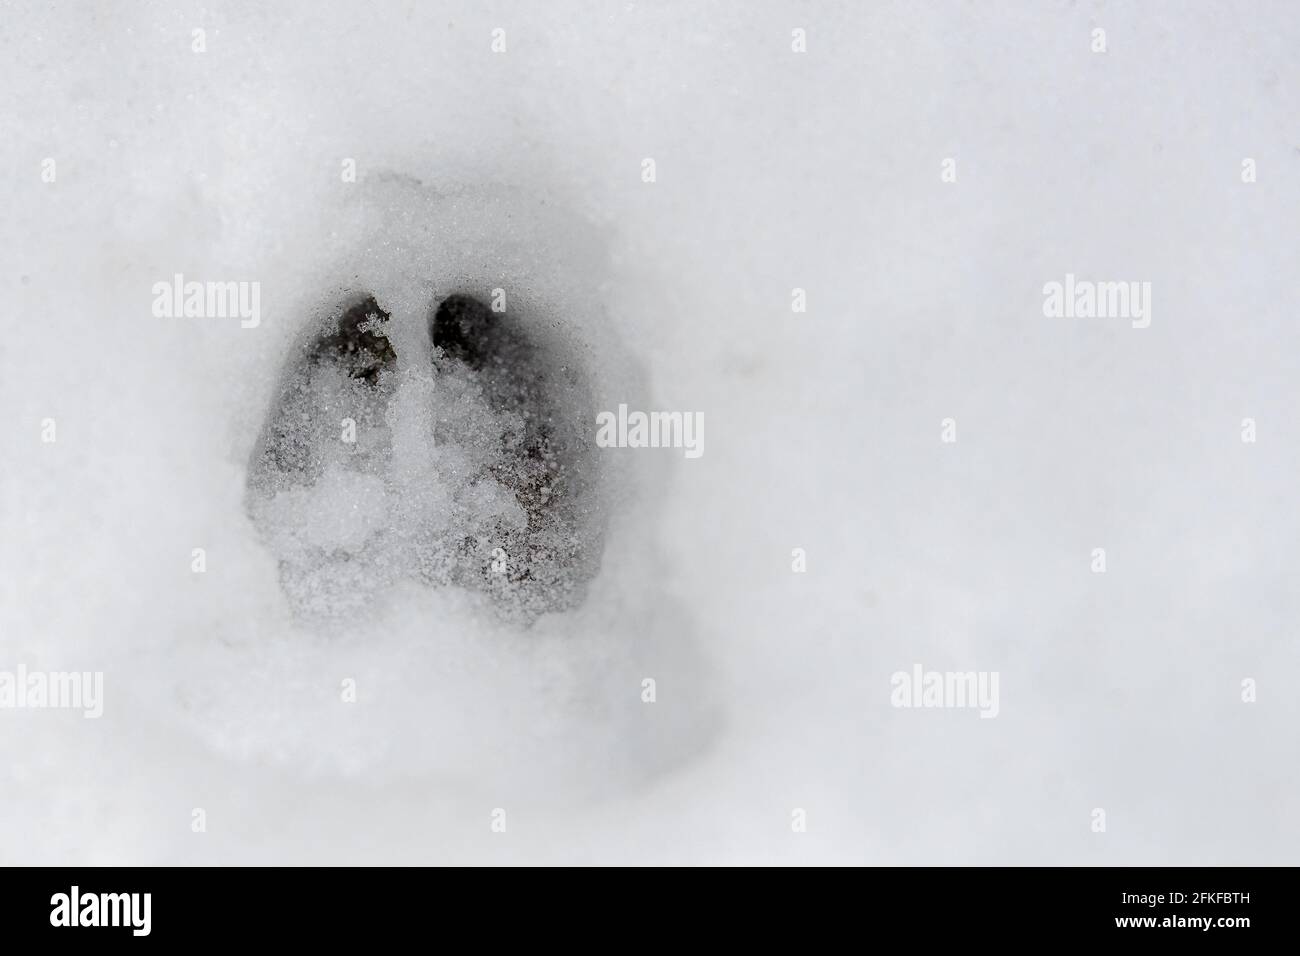 Ein einziger, gut definierter Hirsch-Fußabdruck im Neuschnee. Kleine Schmutzmenge, die unten sichtbar ist. Stockfoto